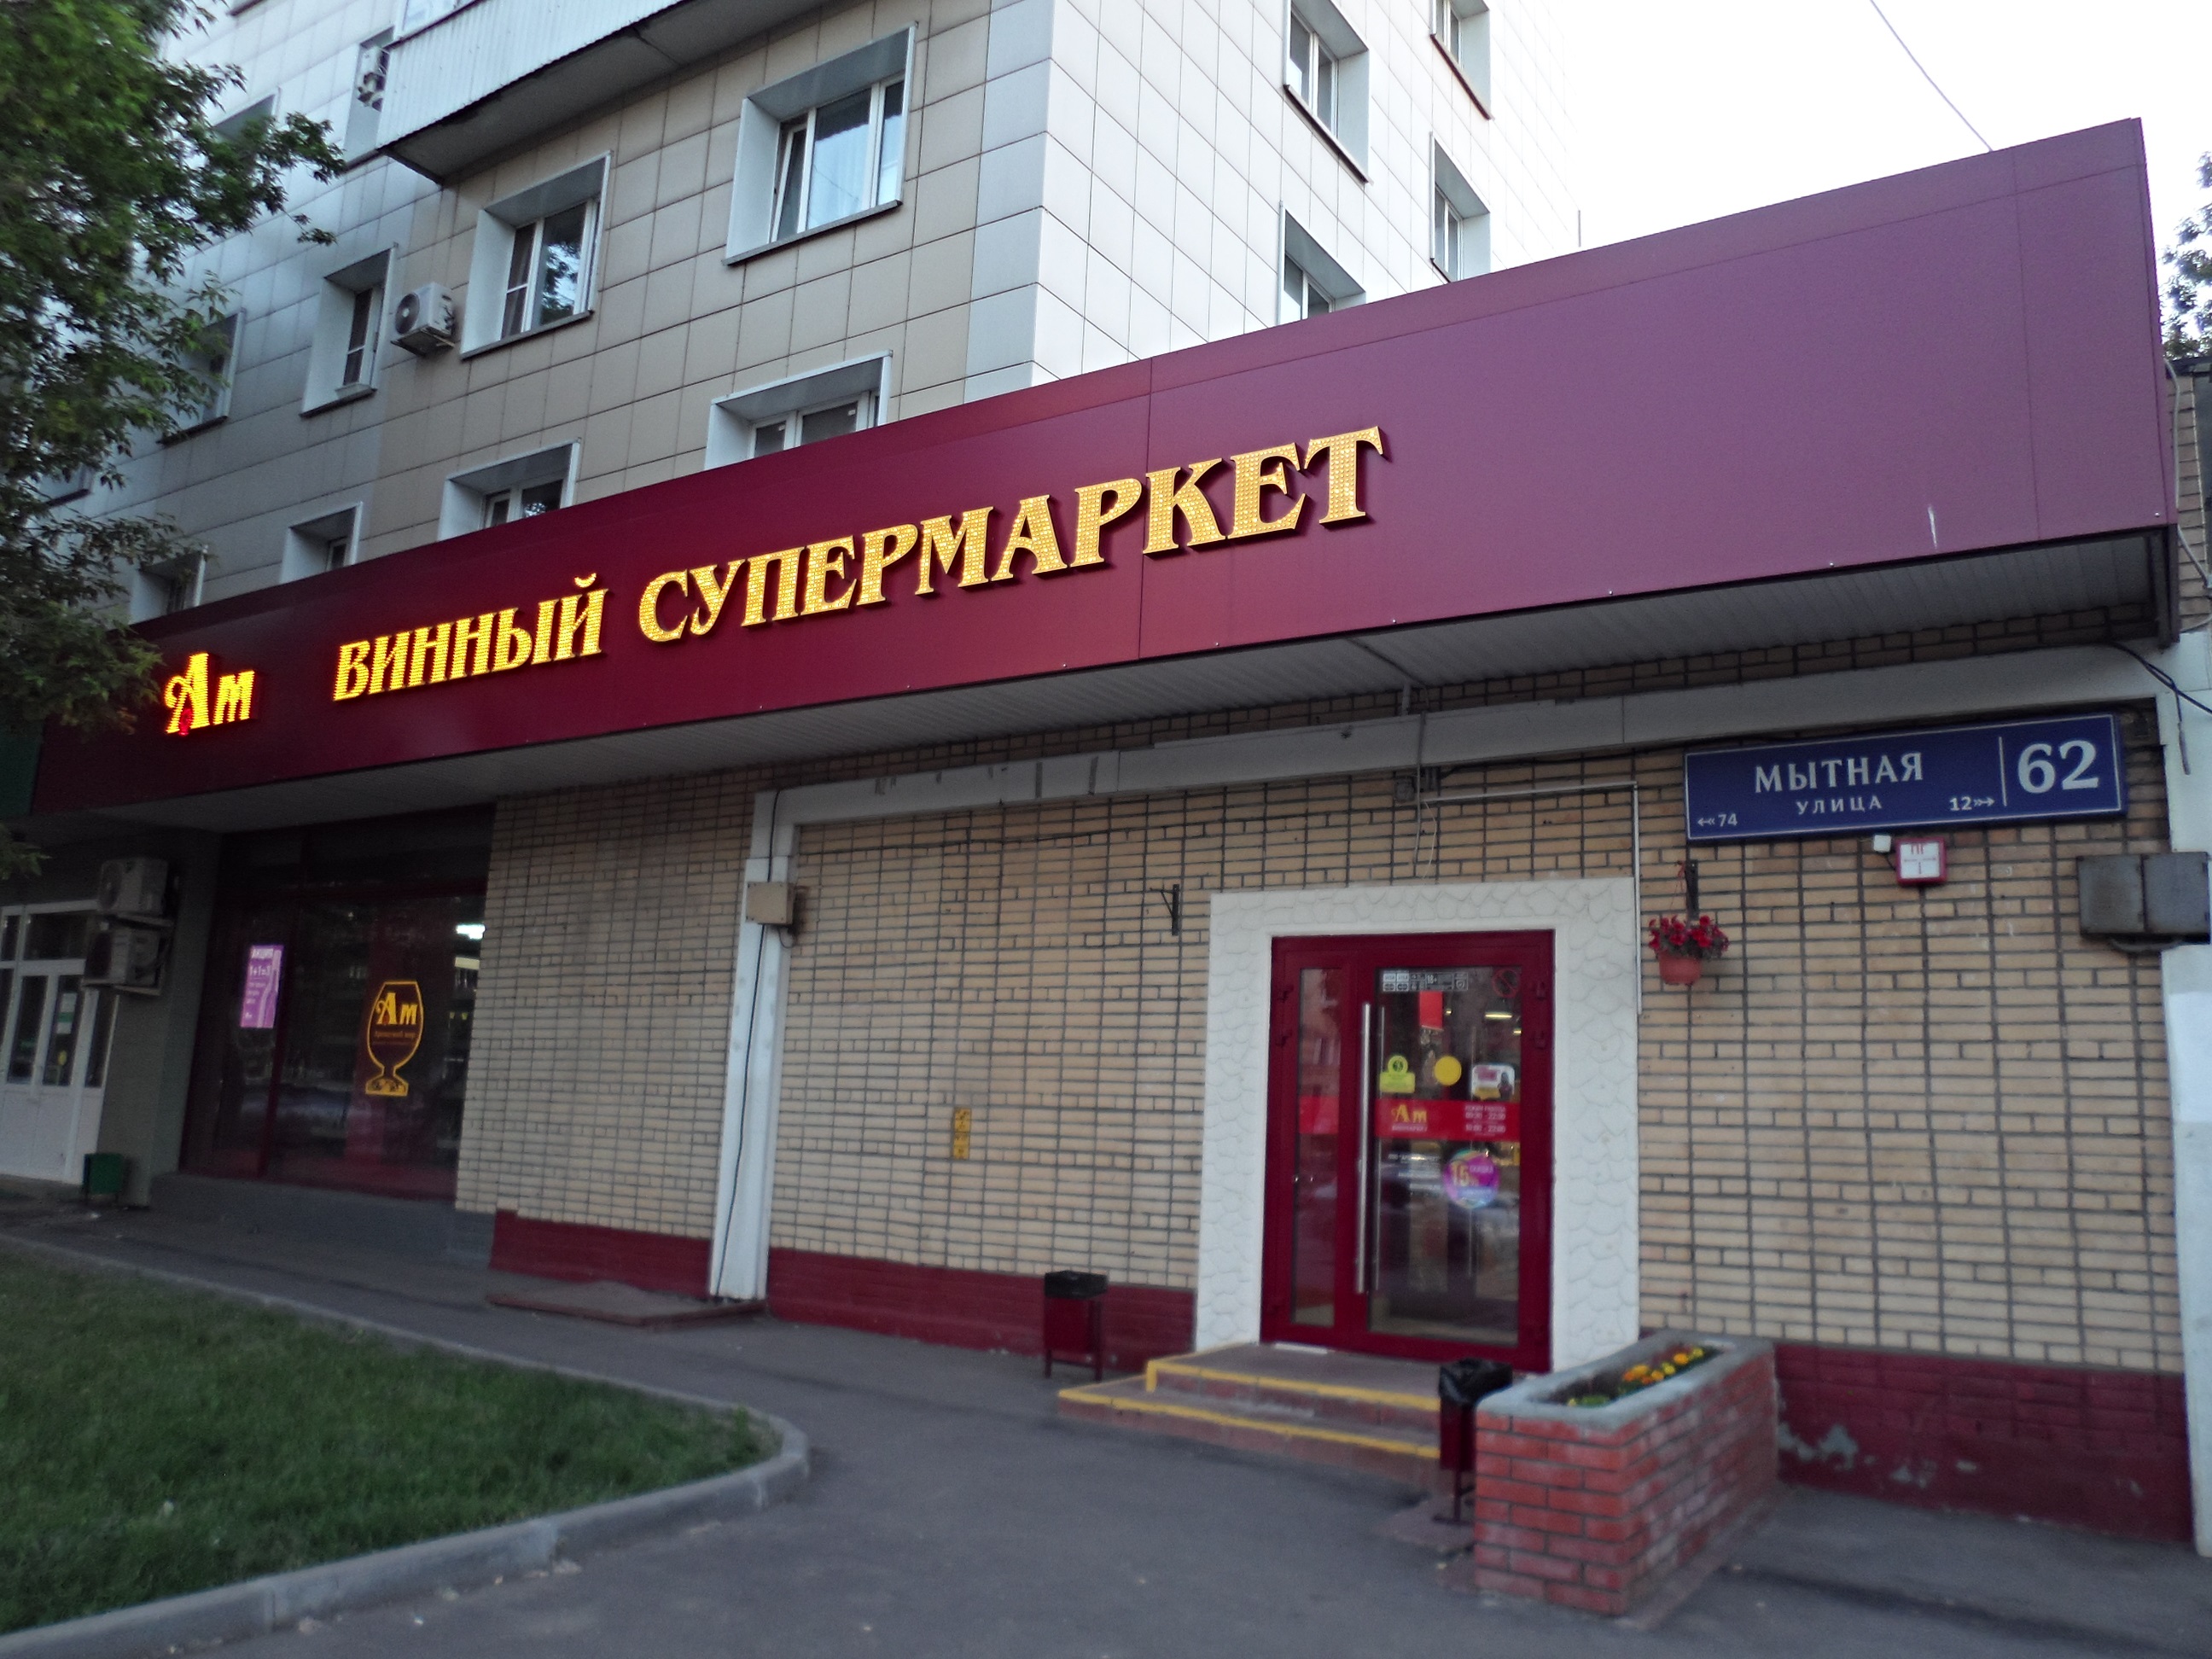 Ароматный Мир Сколько Магазинов В Москве